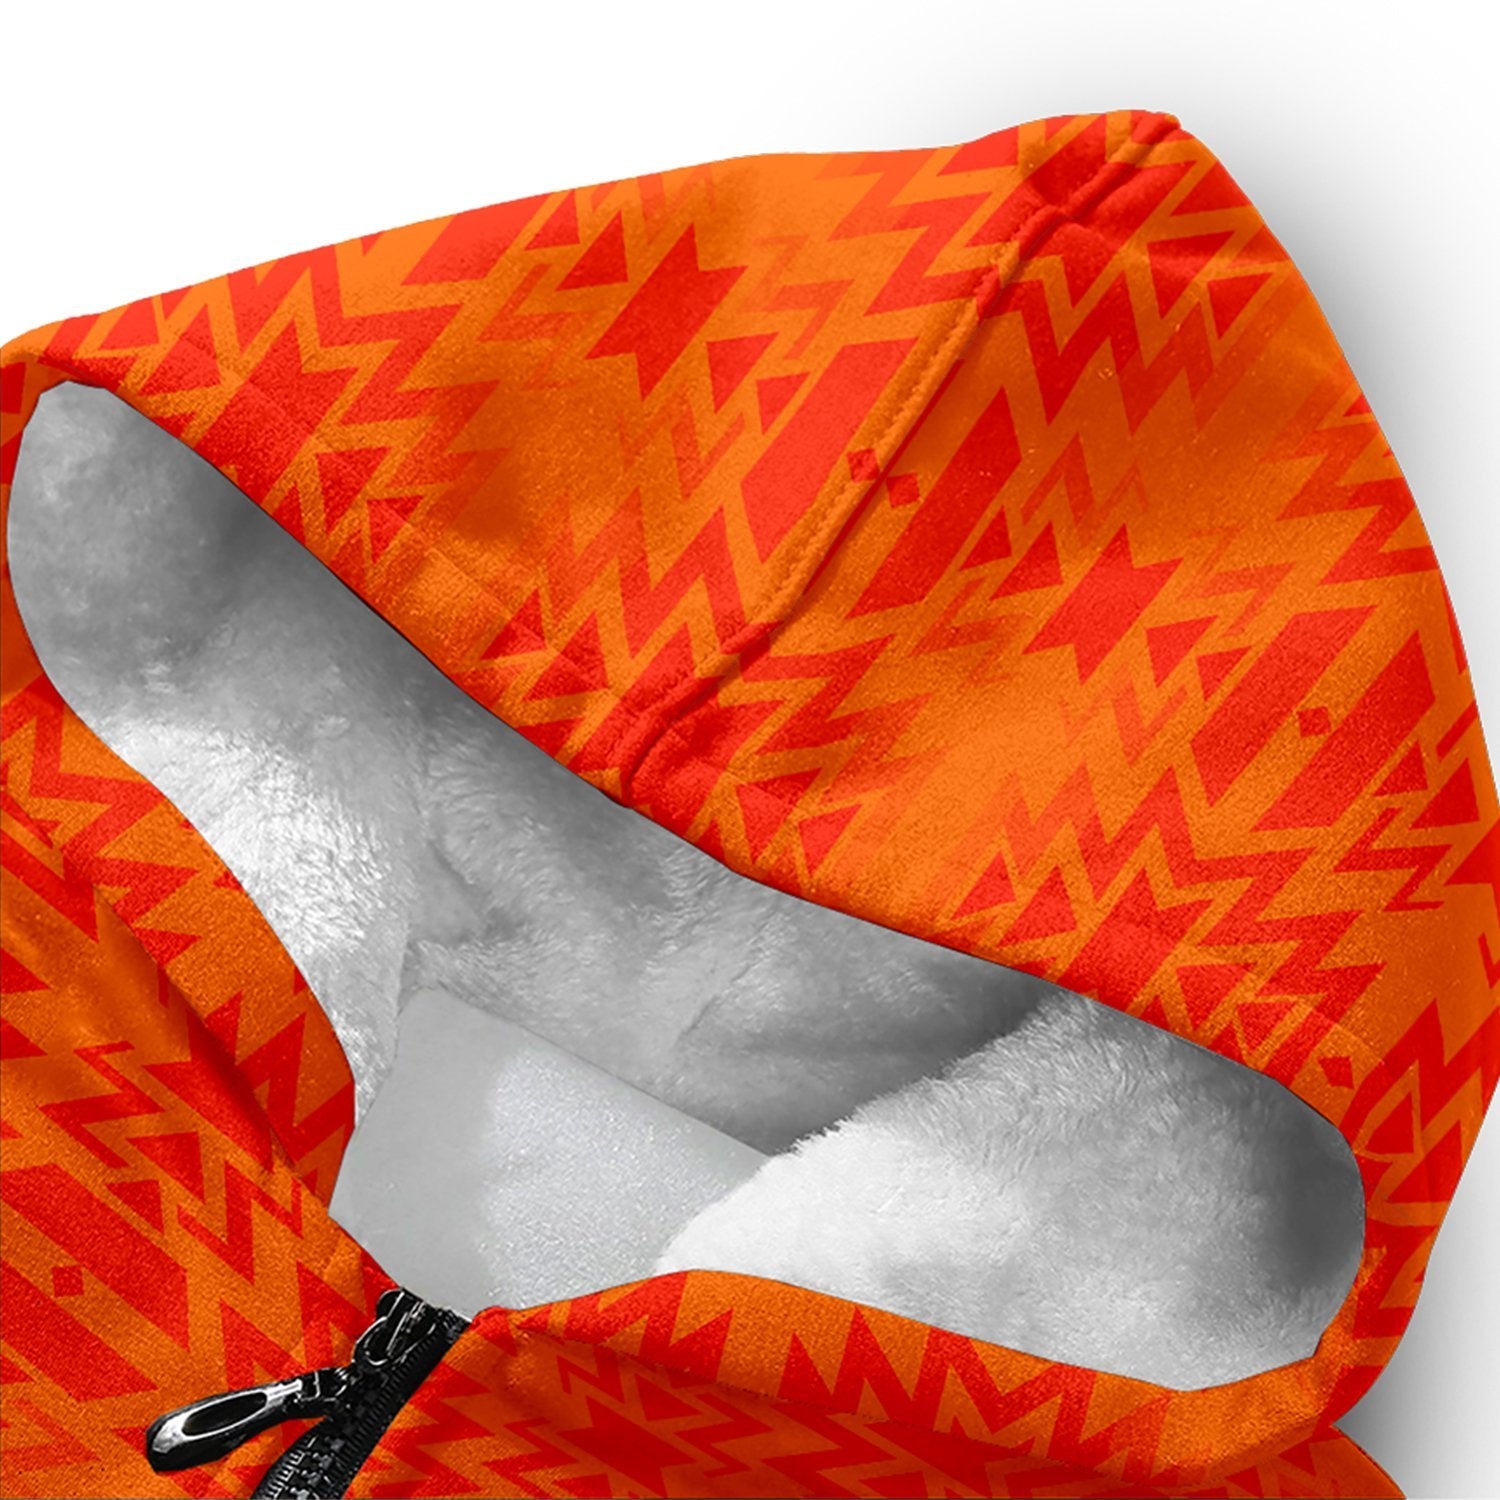 Fire Colors and Turquoise Orange Orange Sherpa Hoodie hoodie Herman 